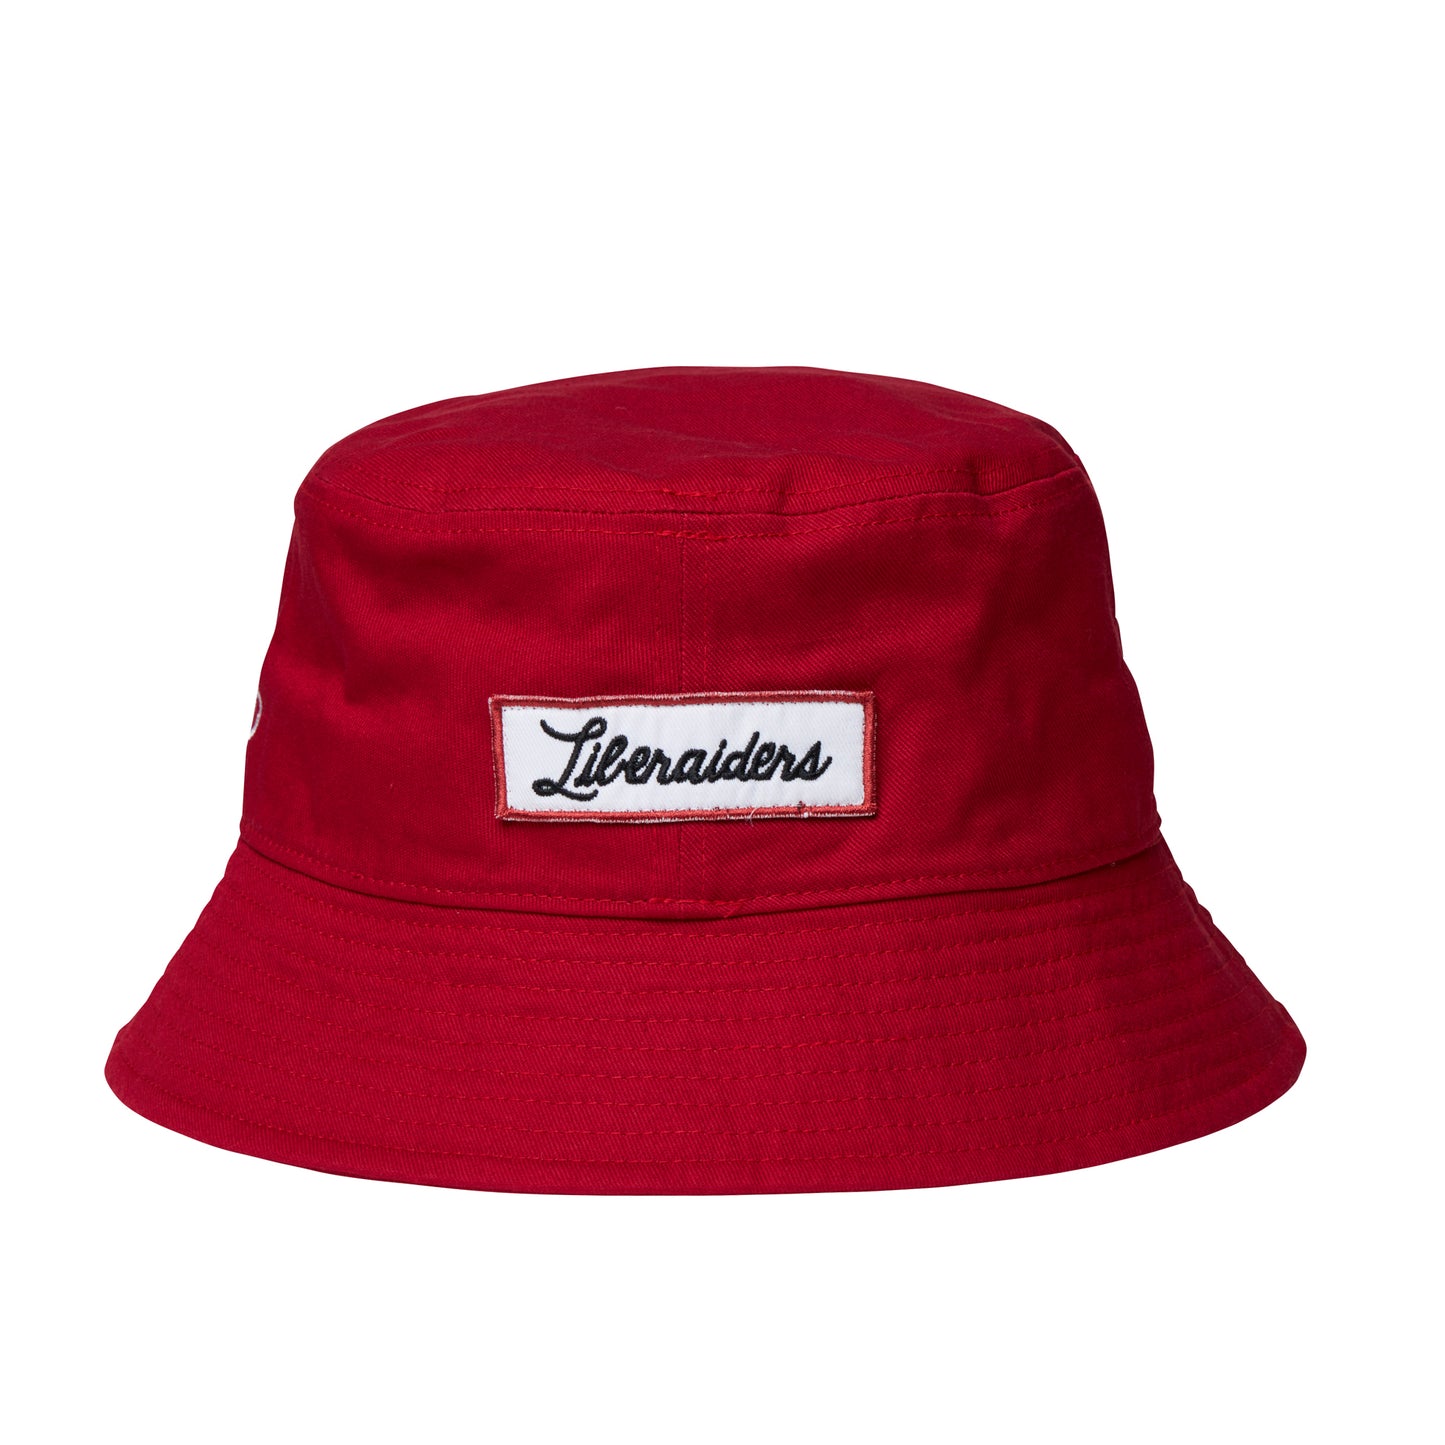 Liberaiders ®(リベレイダース) / CHAMPIONSHIP BUCKET HAT 70902 / RED